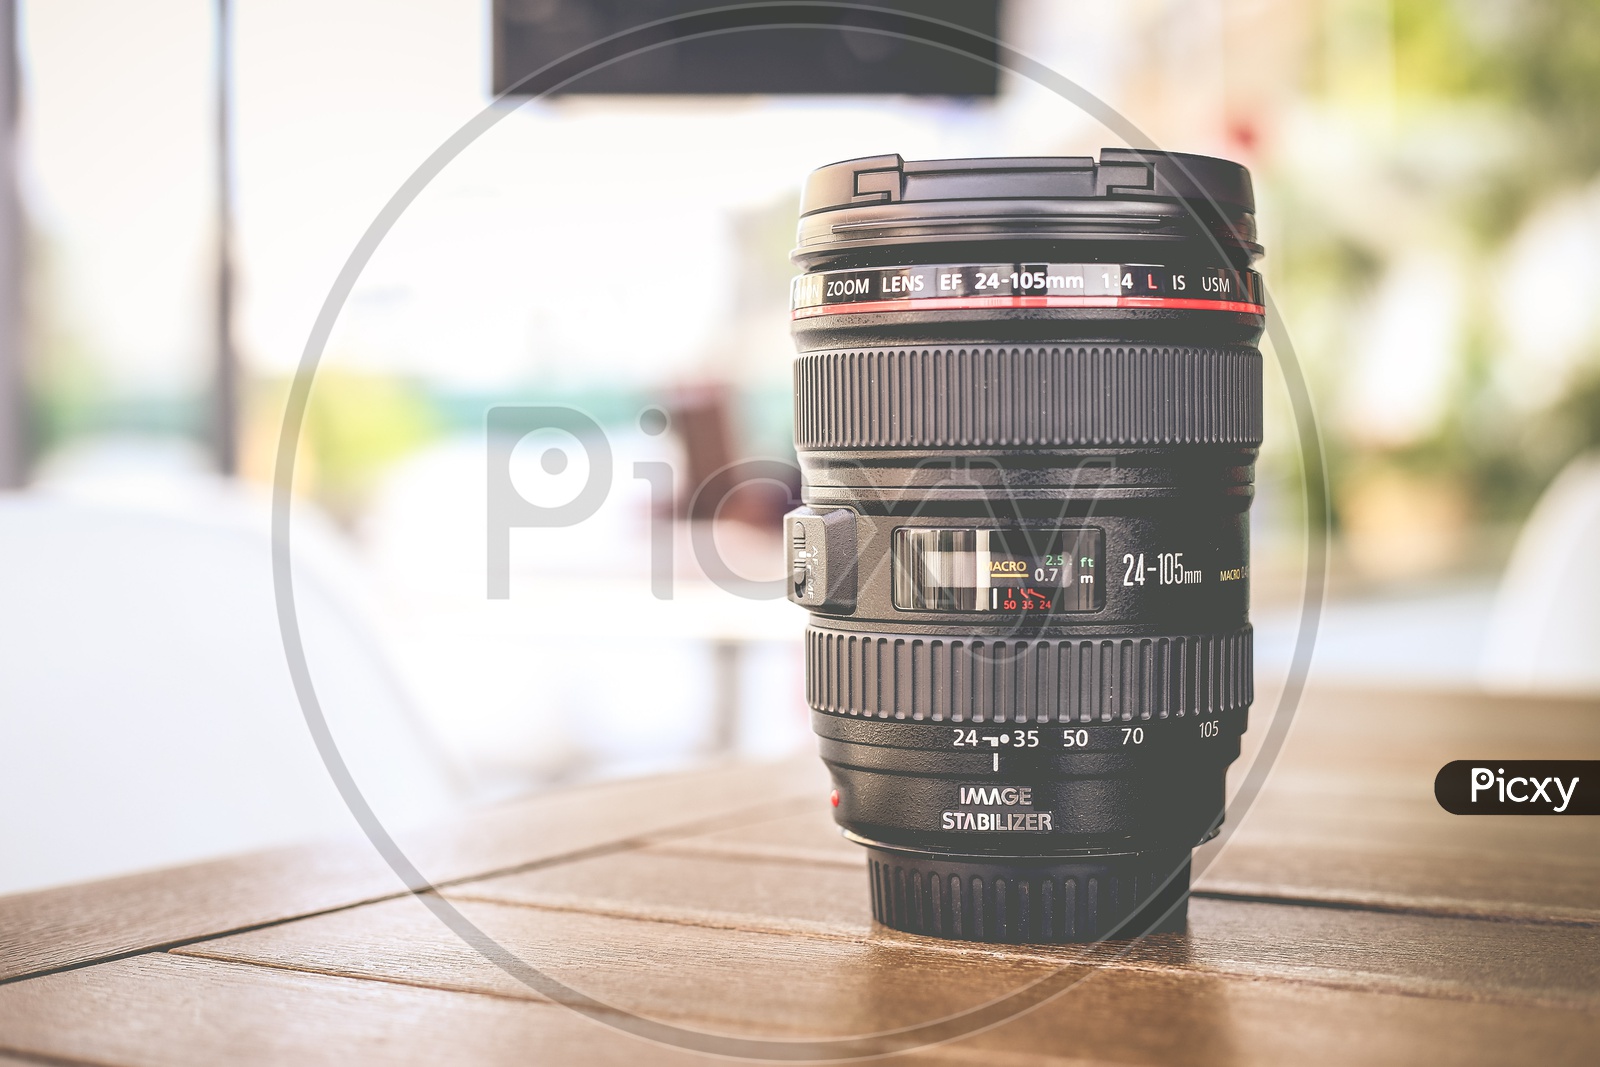 Camera Lens, Canon EOS 24-105 F4 IS USM Lens